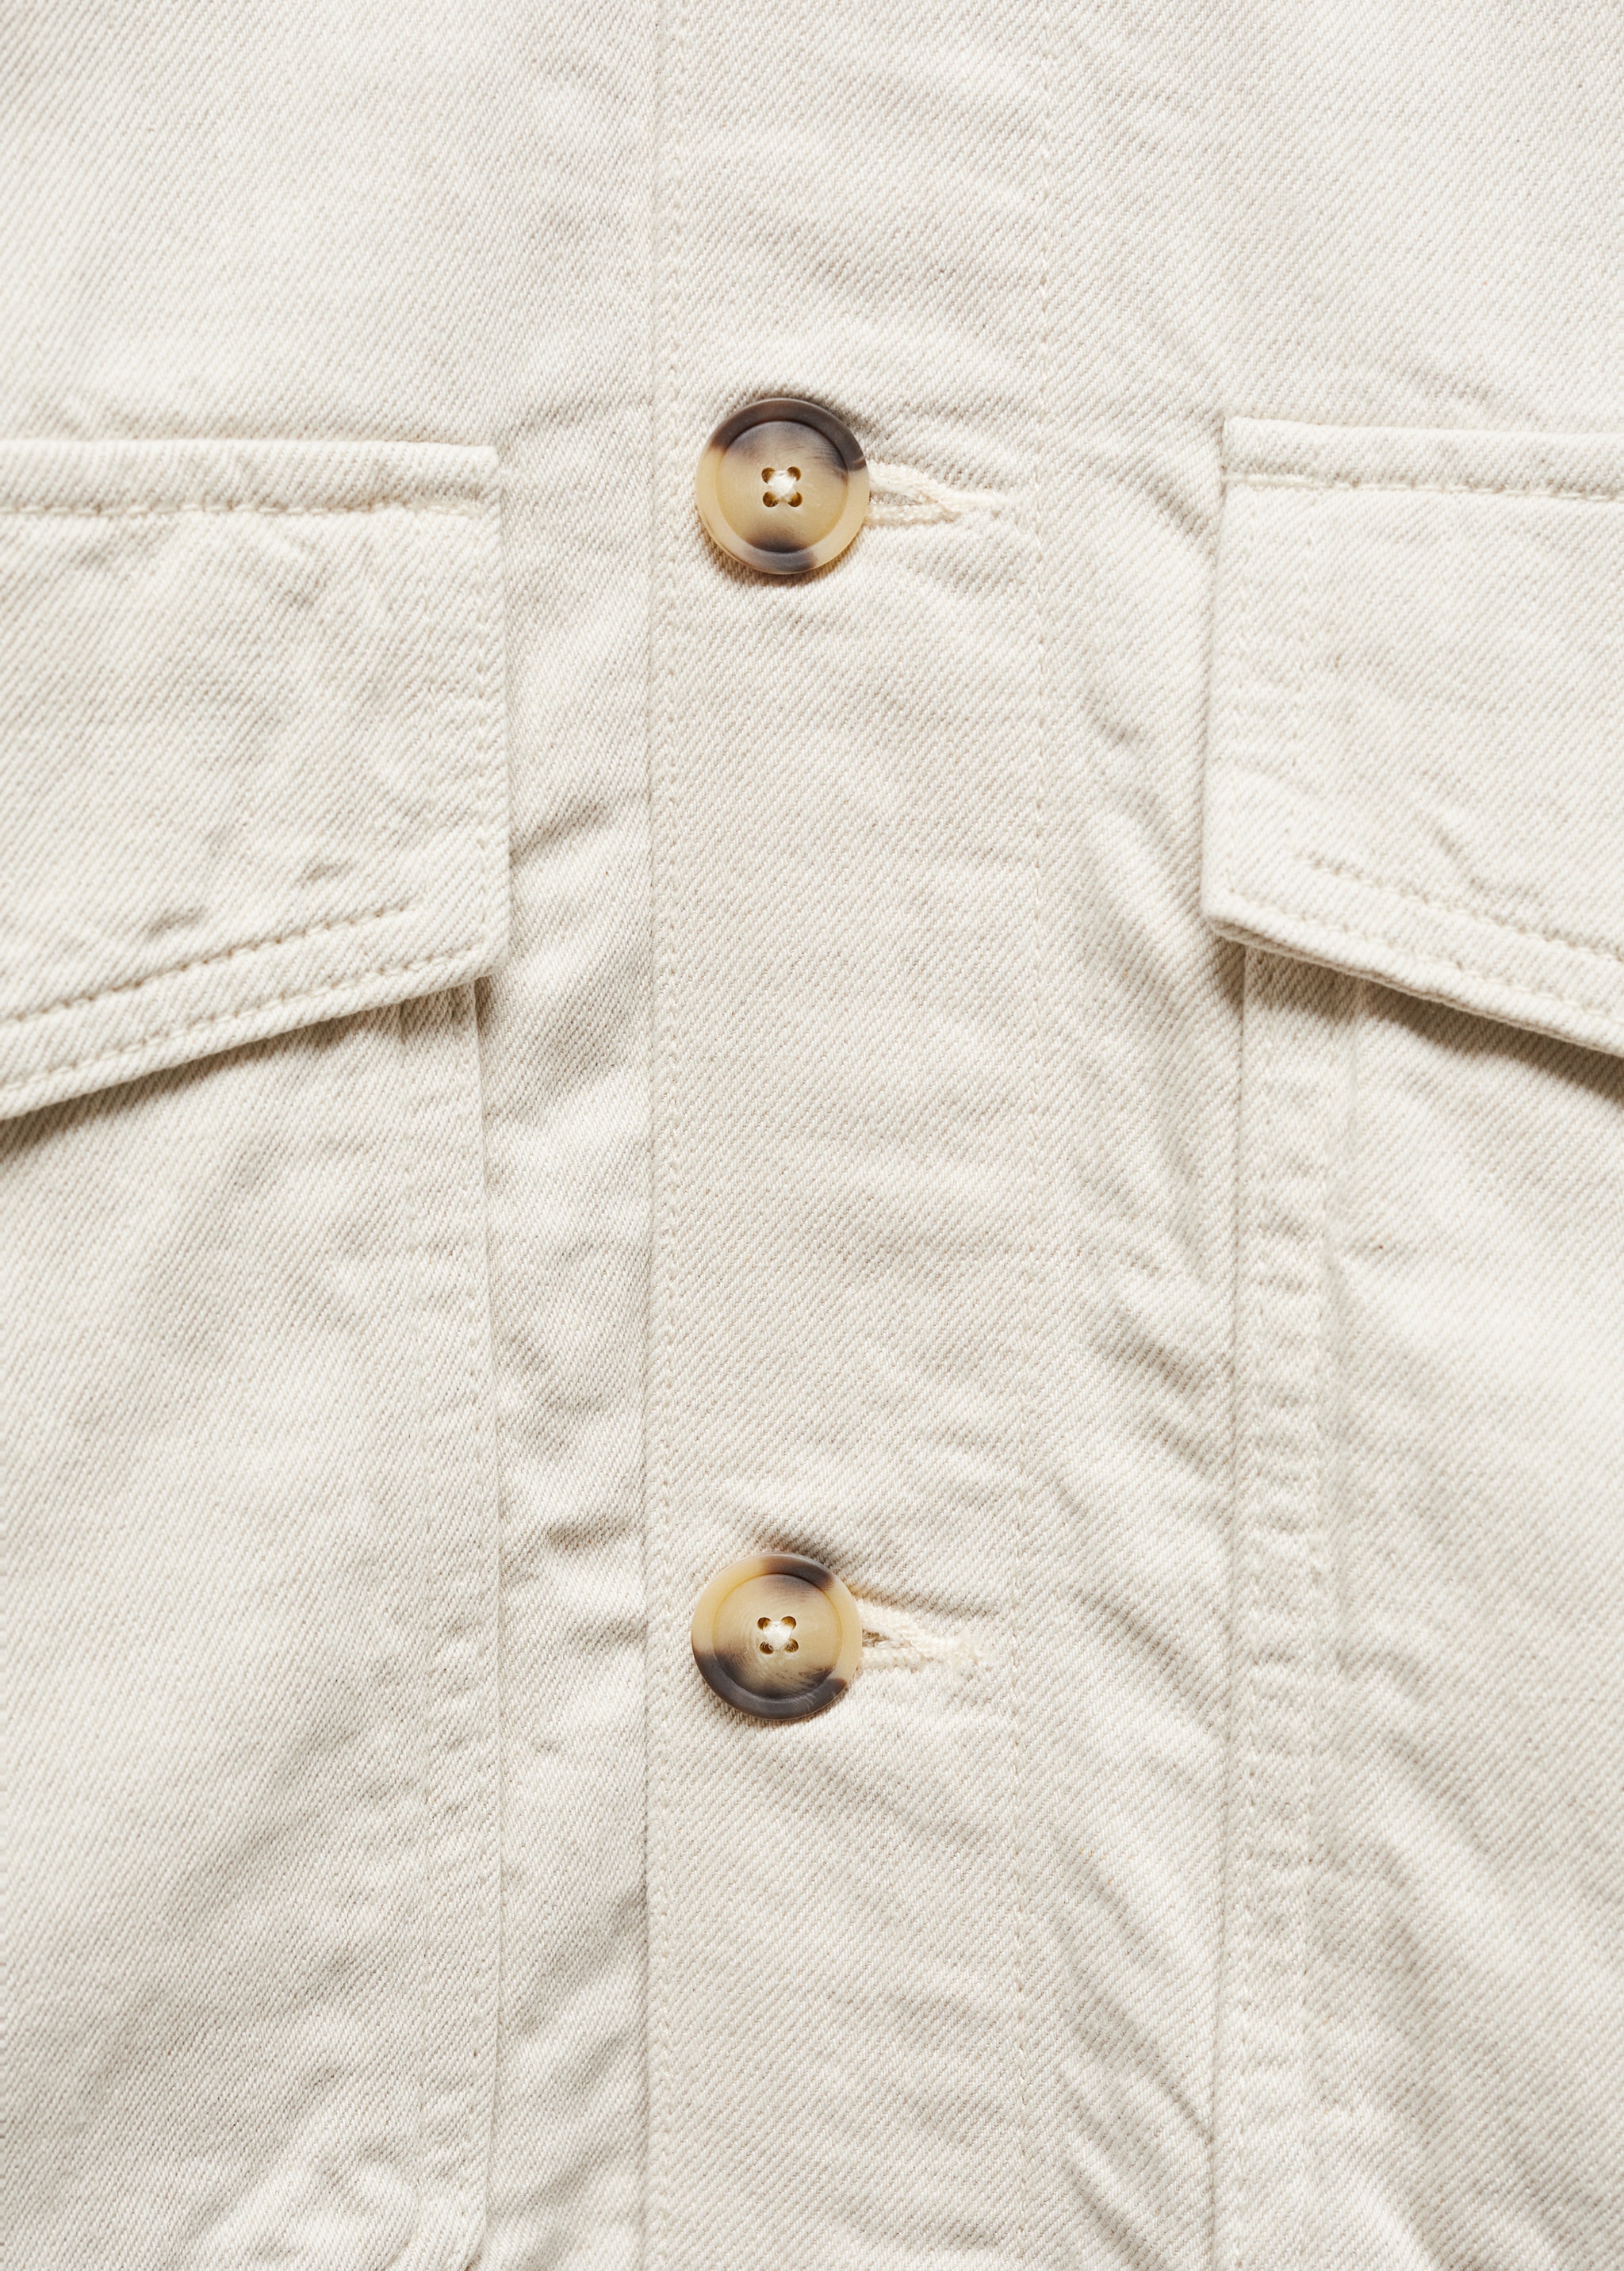 Верхняя рубашка хлопок и лен с карманами - Деталь изделия 8